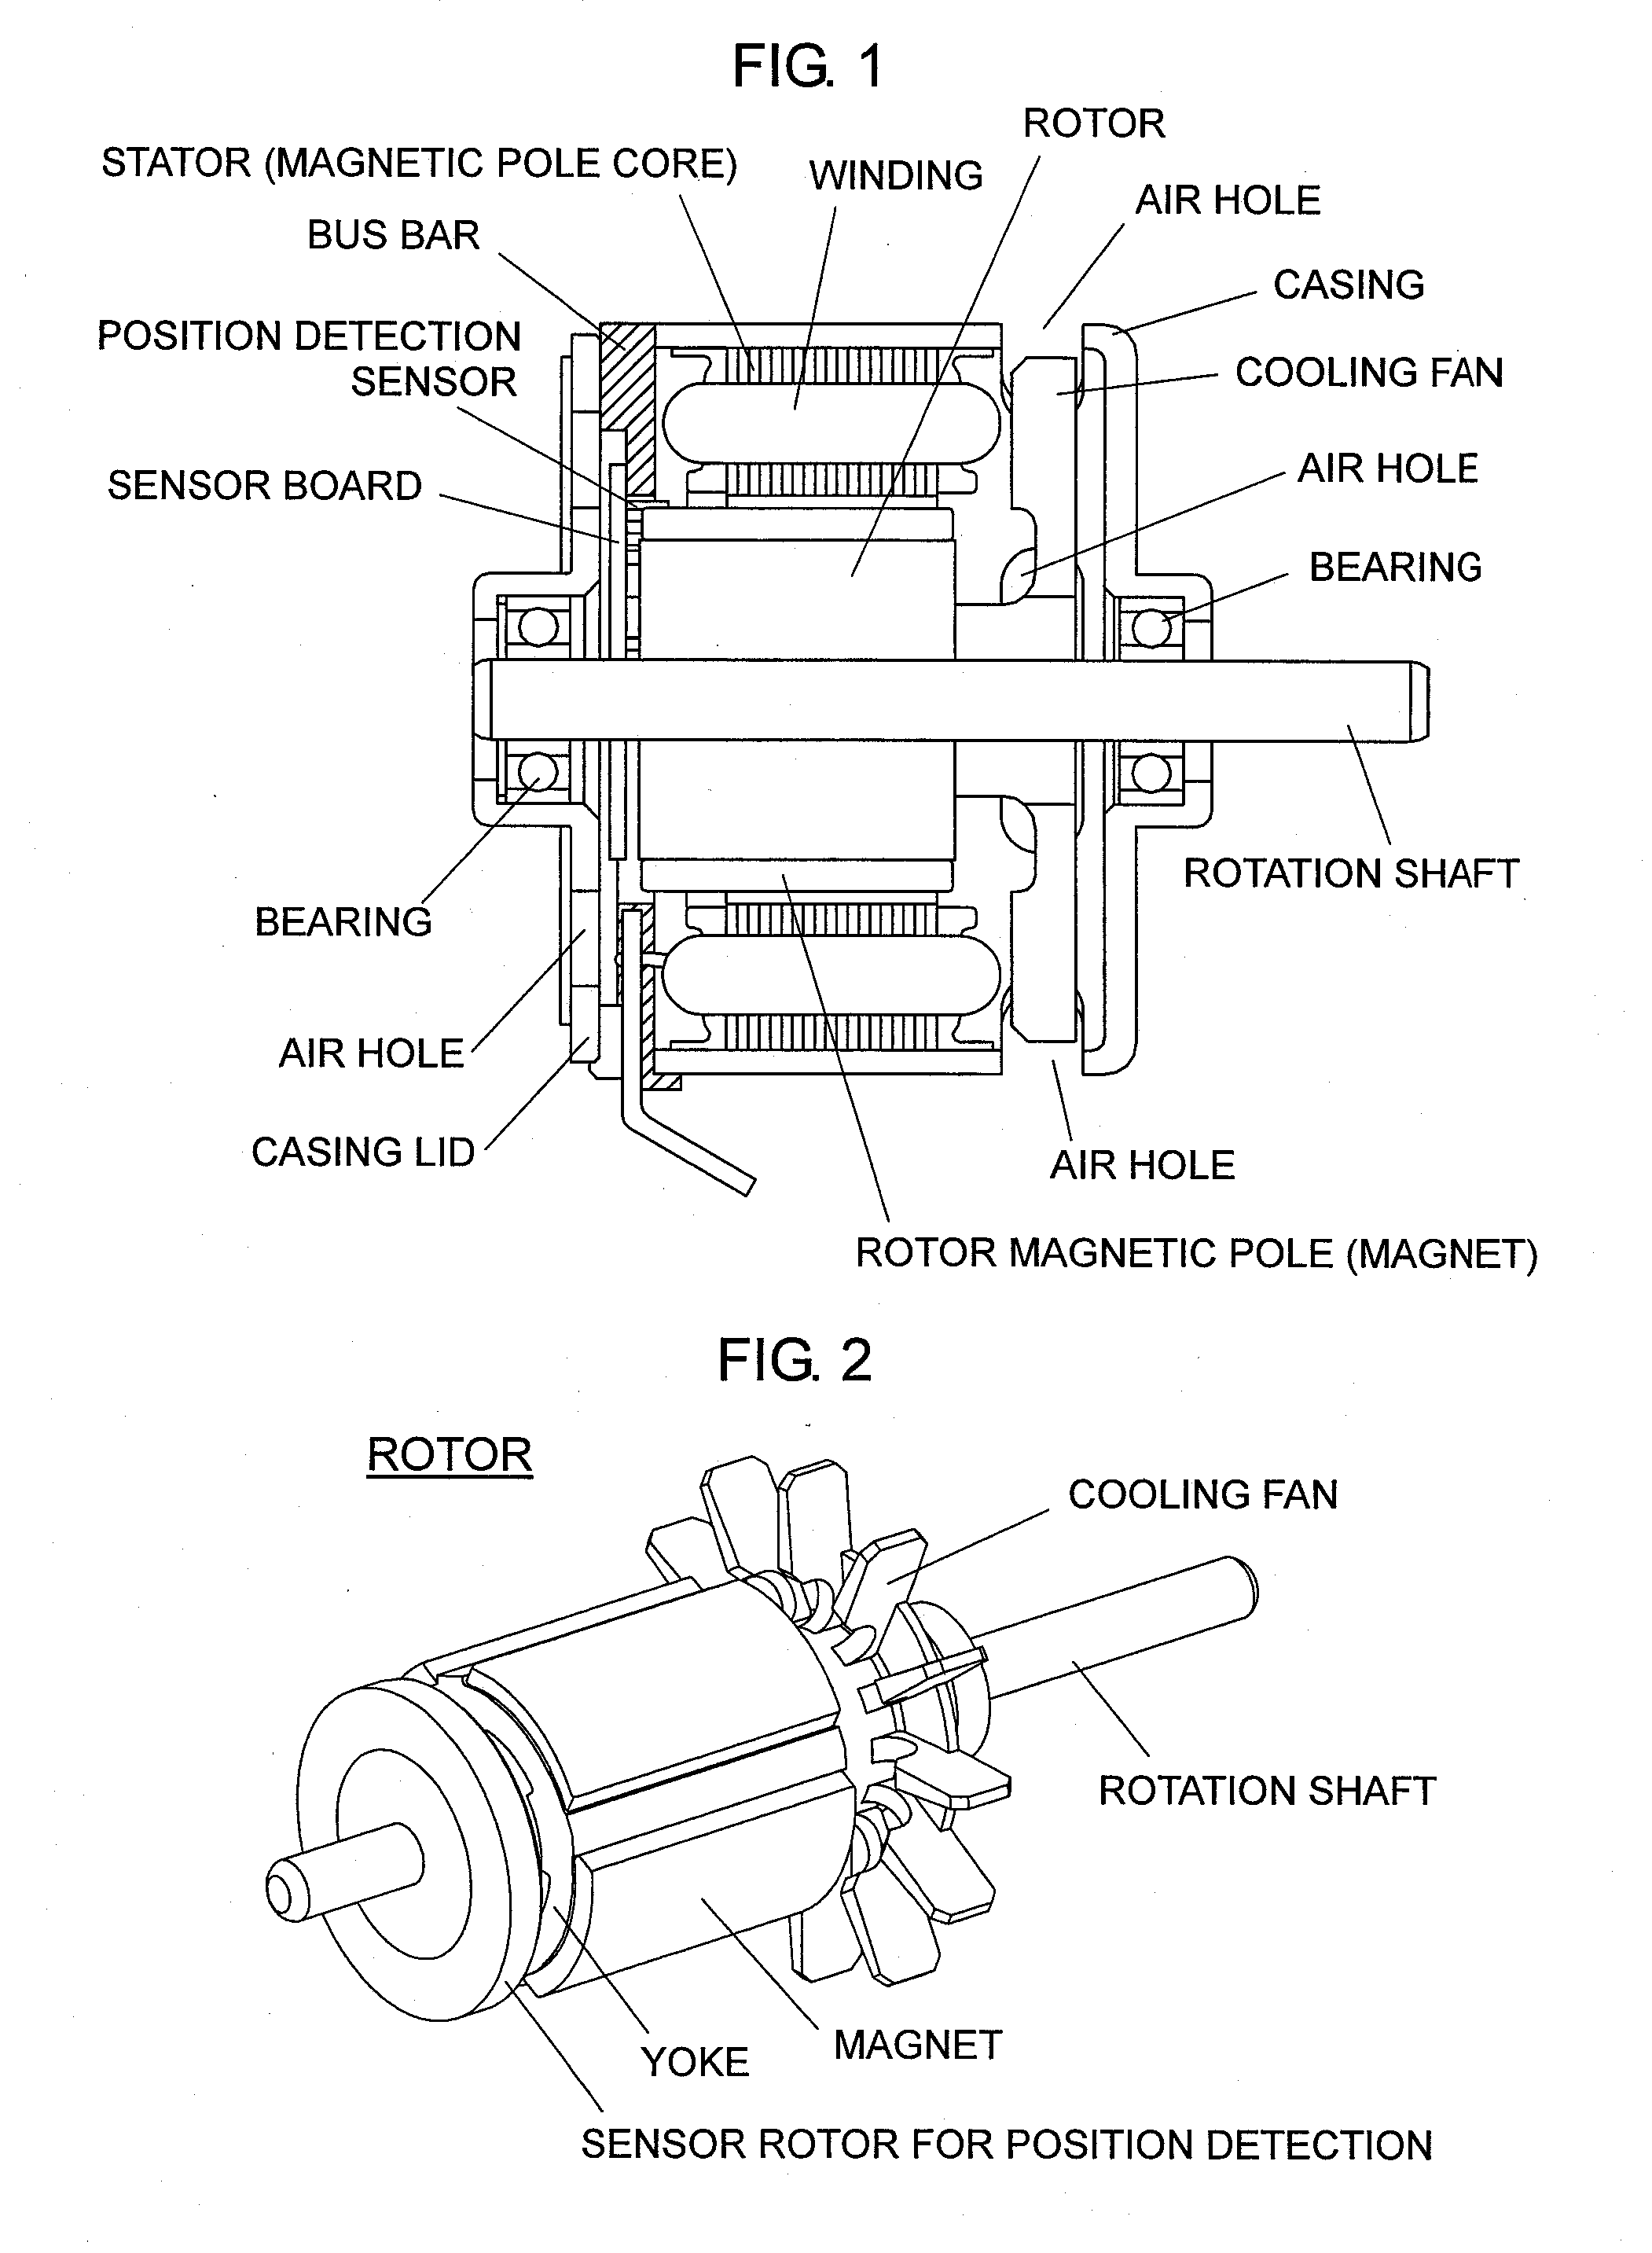 Inner-rotor-type brushless motor having built-in bus bar